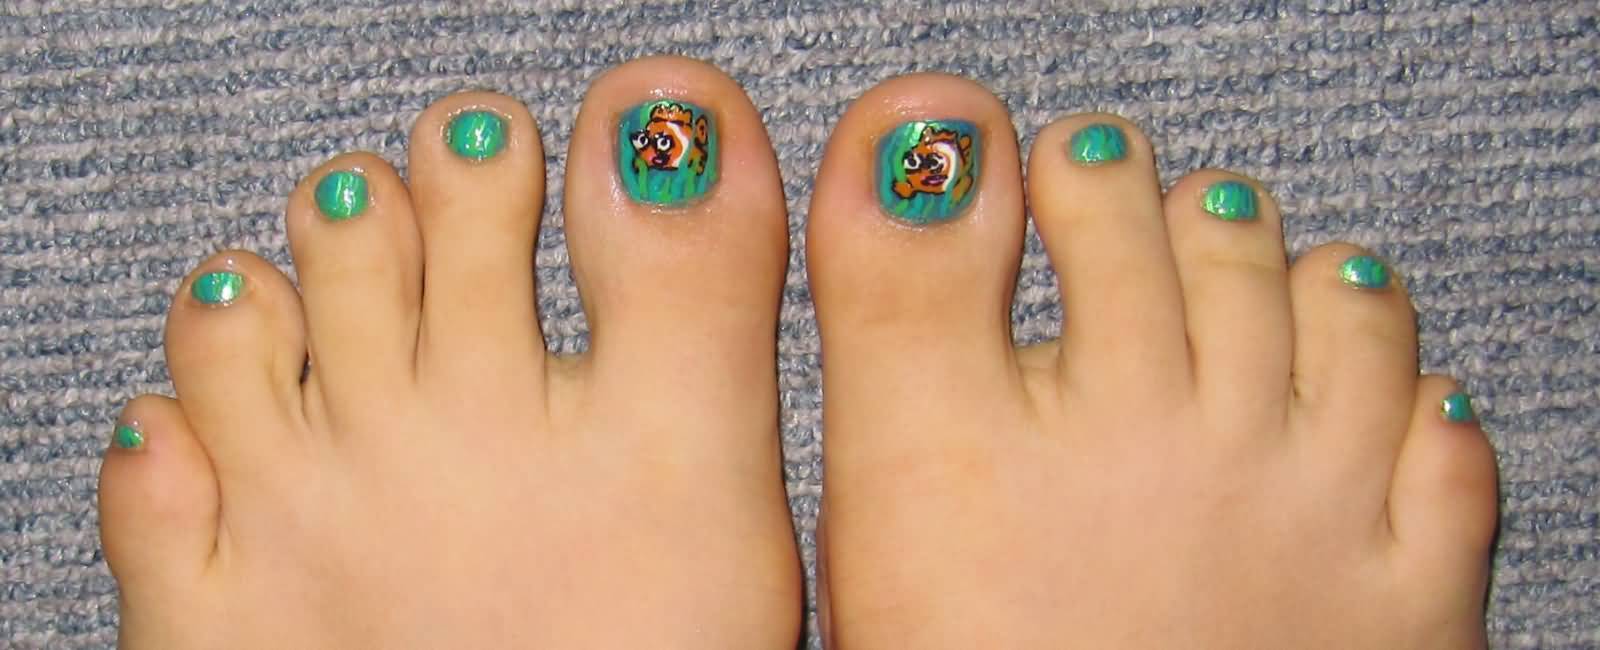 Green Nails With Fish Toe Nail Art Design